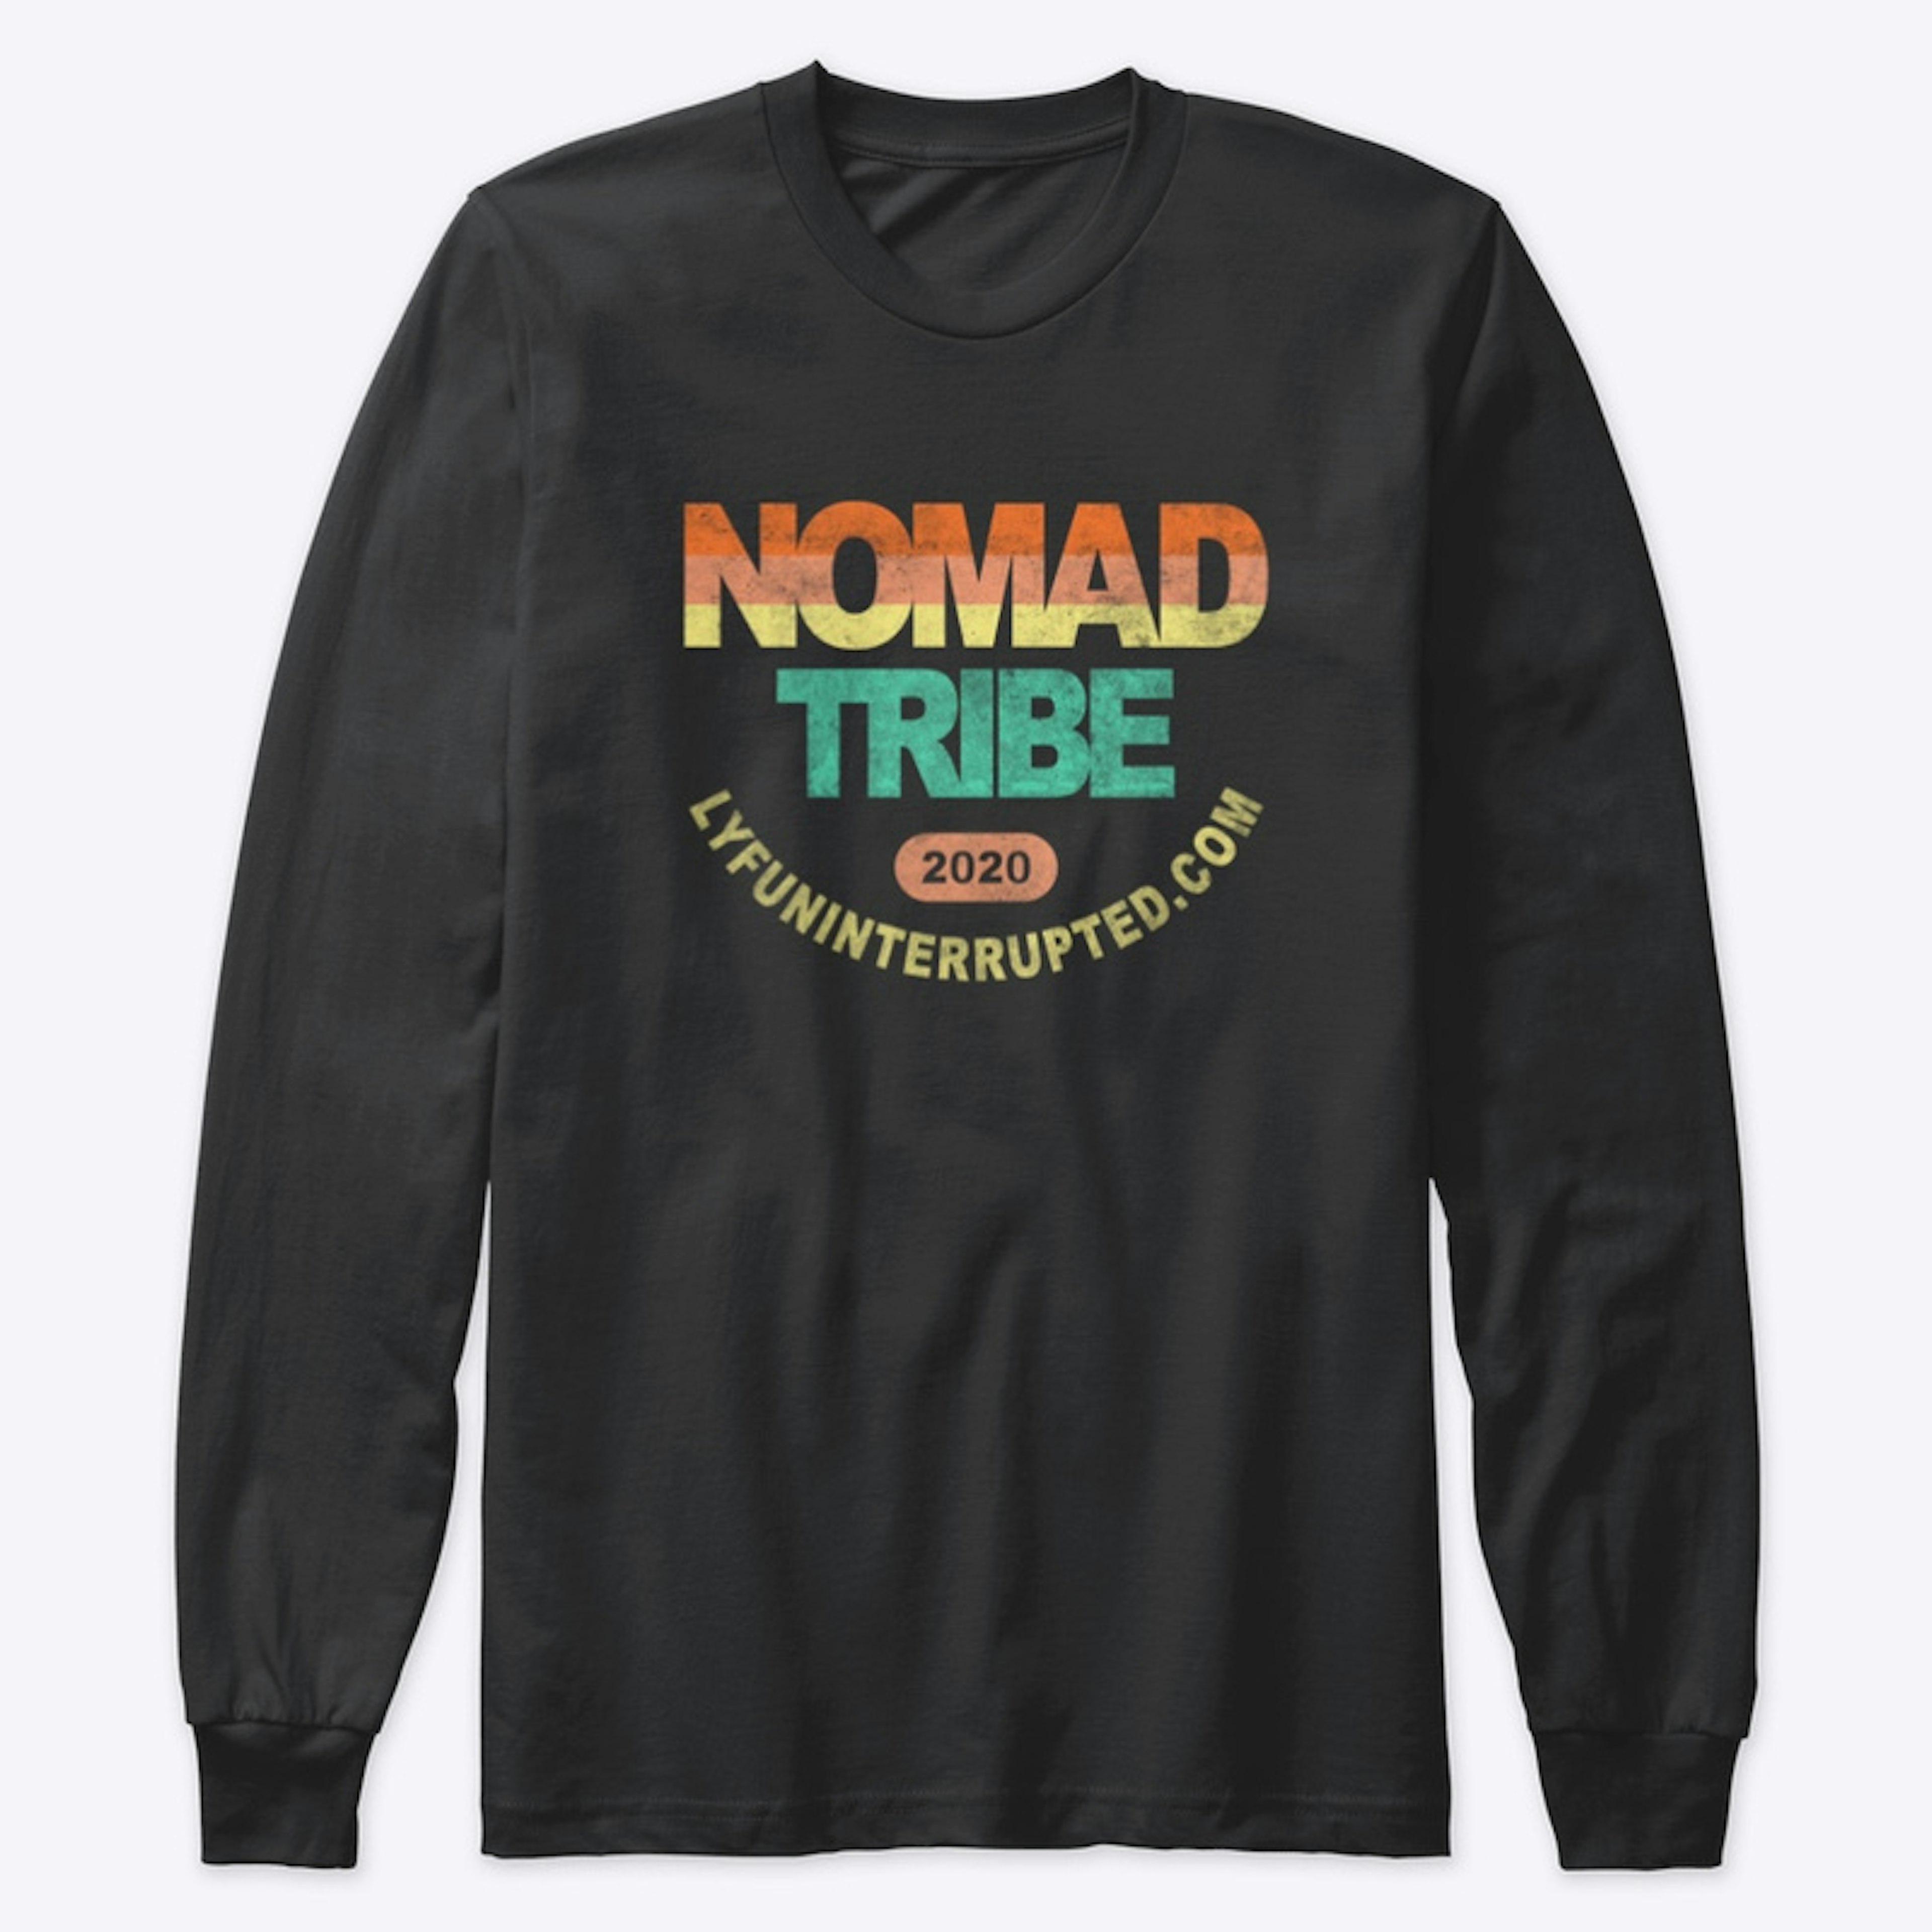 Nomad Tribe Sunrise Design